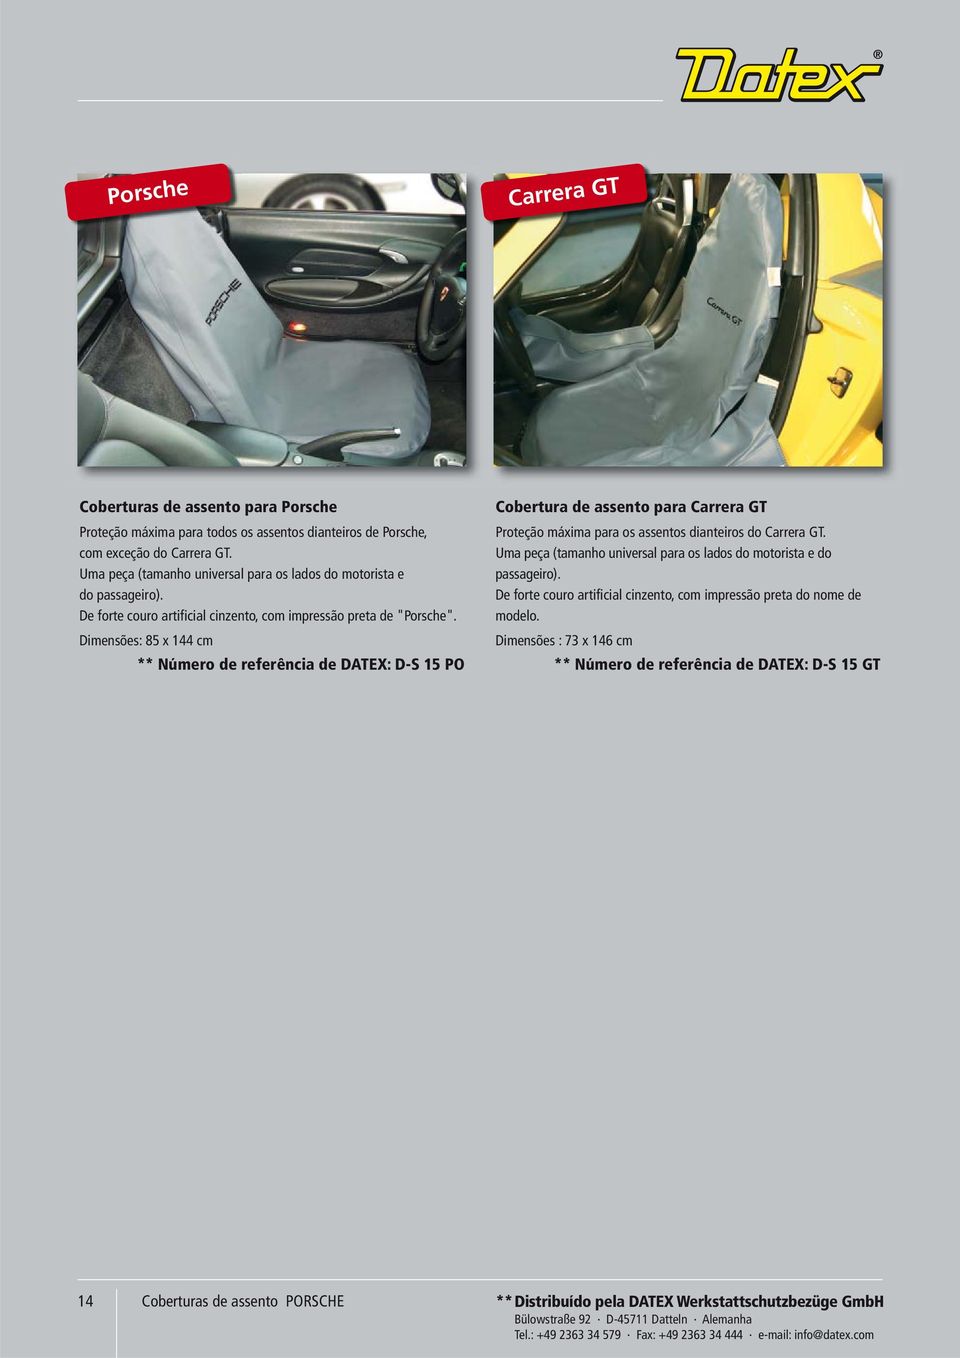 Dimensões: 85 x 144 cm ** Número de referência de DATEX: D-S 15 PO Cobertura de assento para Carrera GT Proteção máxima para os assentos dianteiros do Carrera GT.